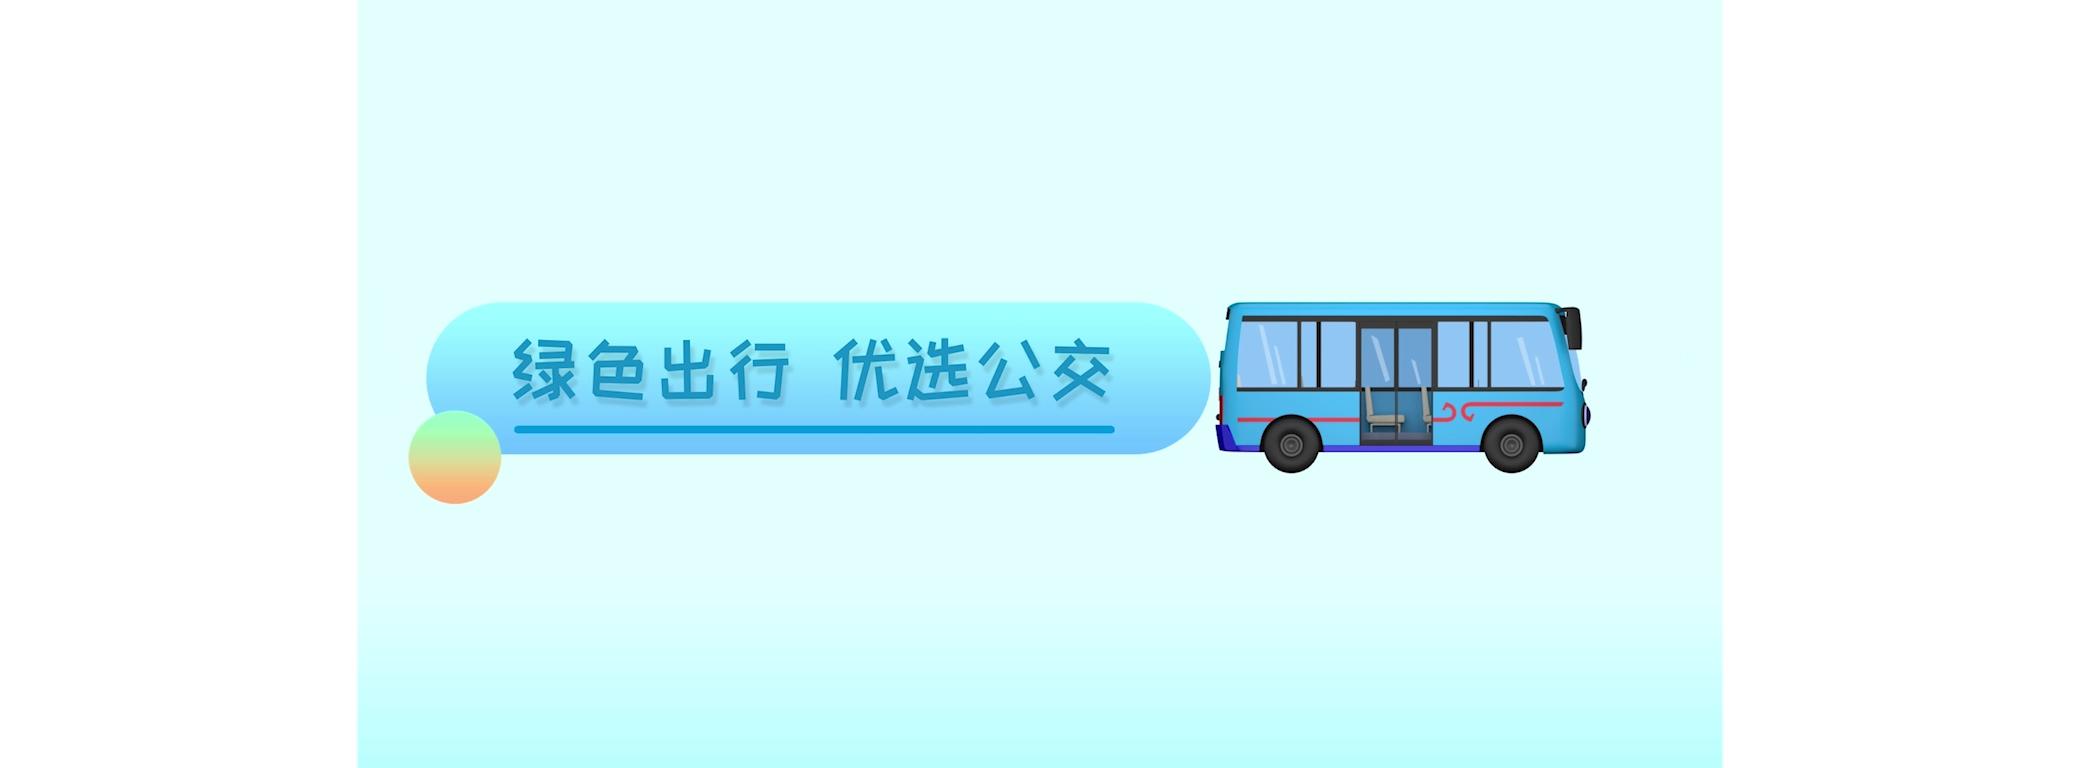 东莞巴士绿色出行动画宣传